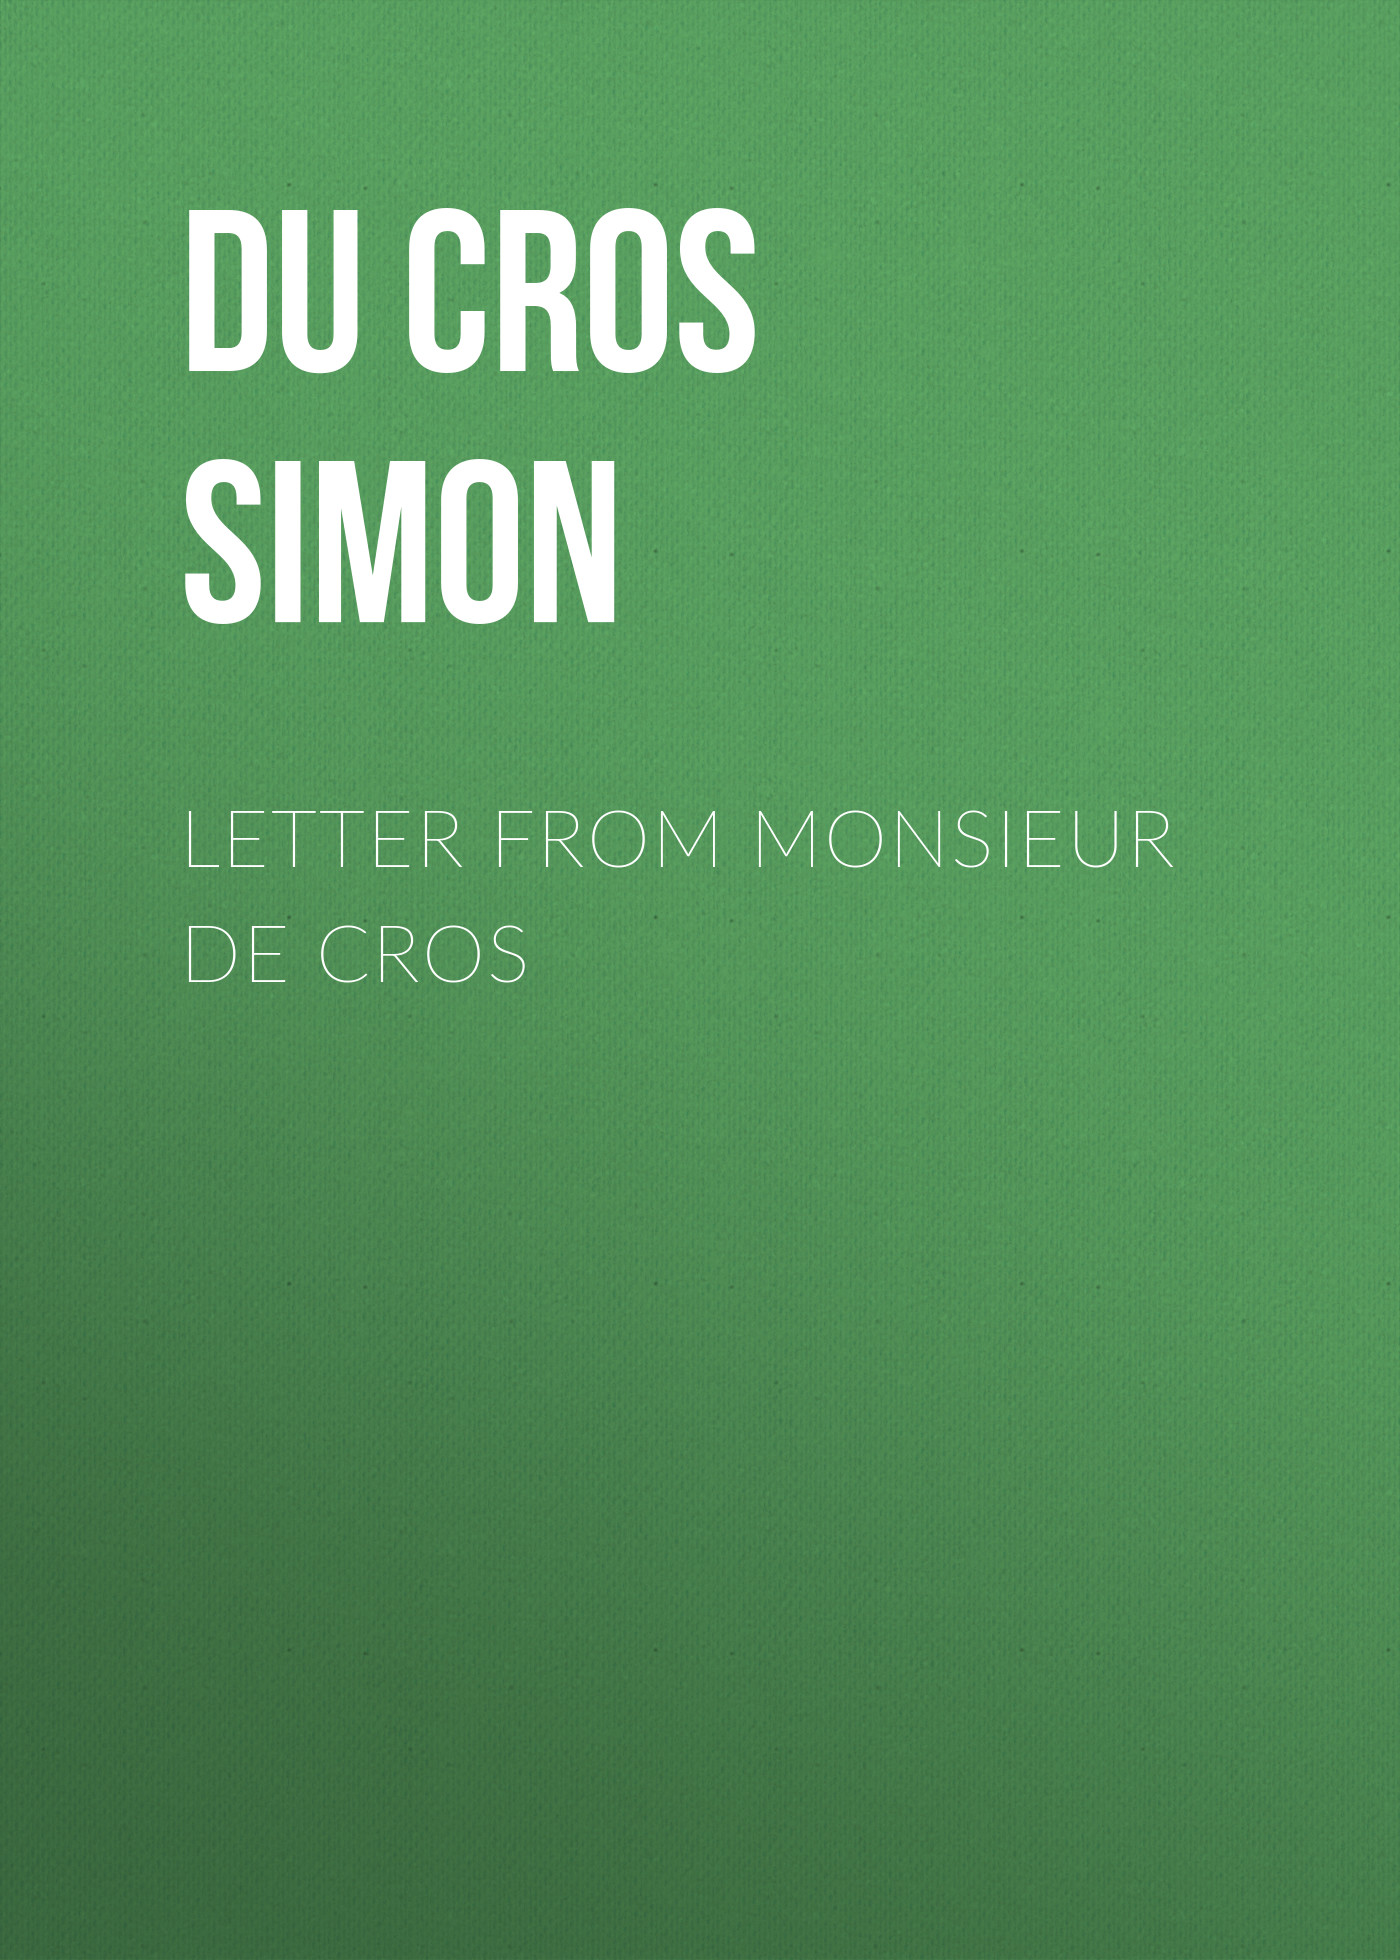 Книга Letter from Monsieur de Cros из серии , созданная Simon Du Cros, может относится к жанру Зарубежная старинная литература, Зарубежная классика. Стоимость электронной книги Letter from Monsieur de Cros с идентификатором 24621549 составляет 0 руб.